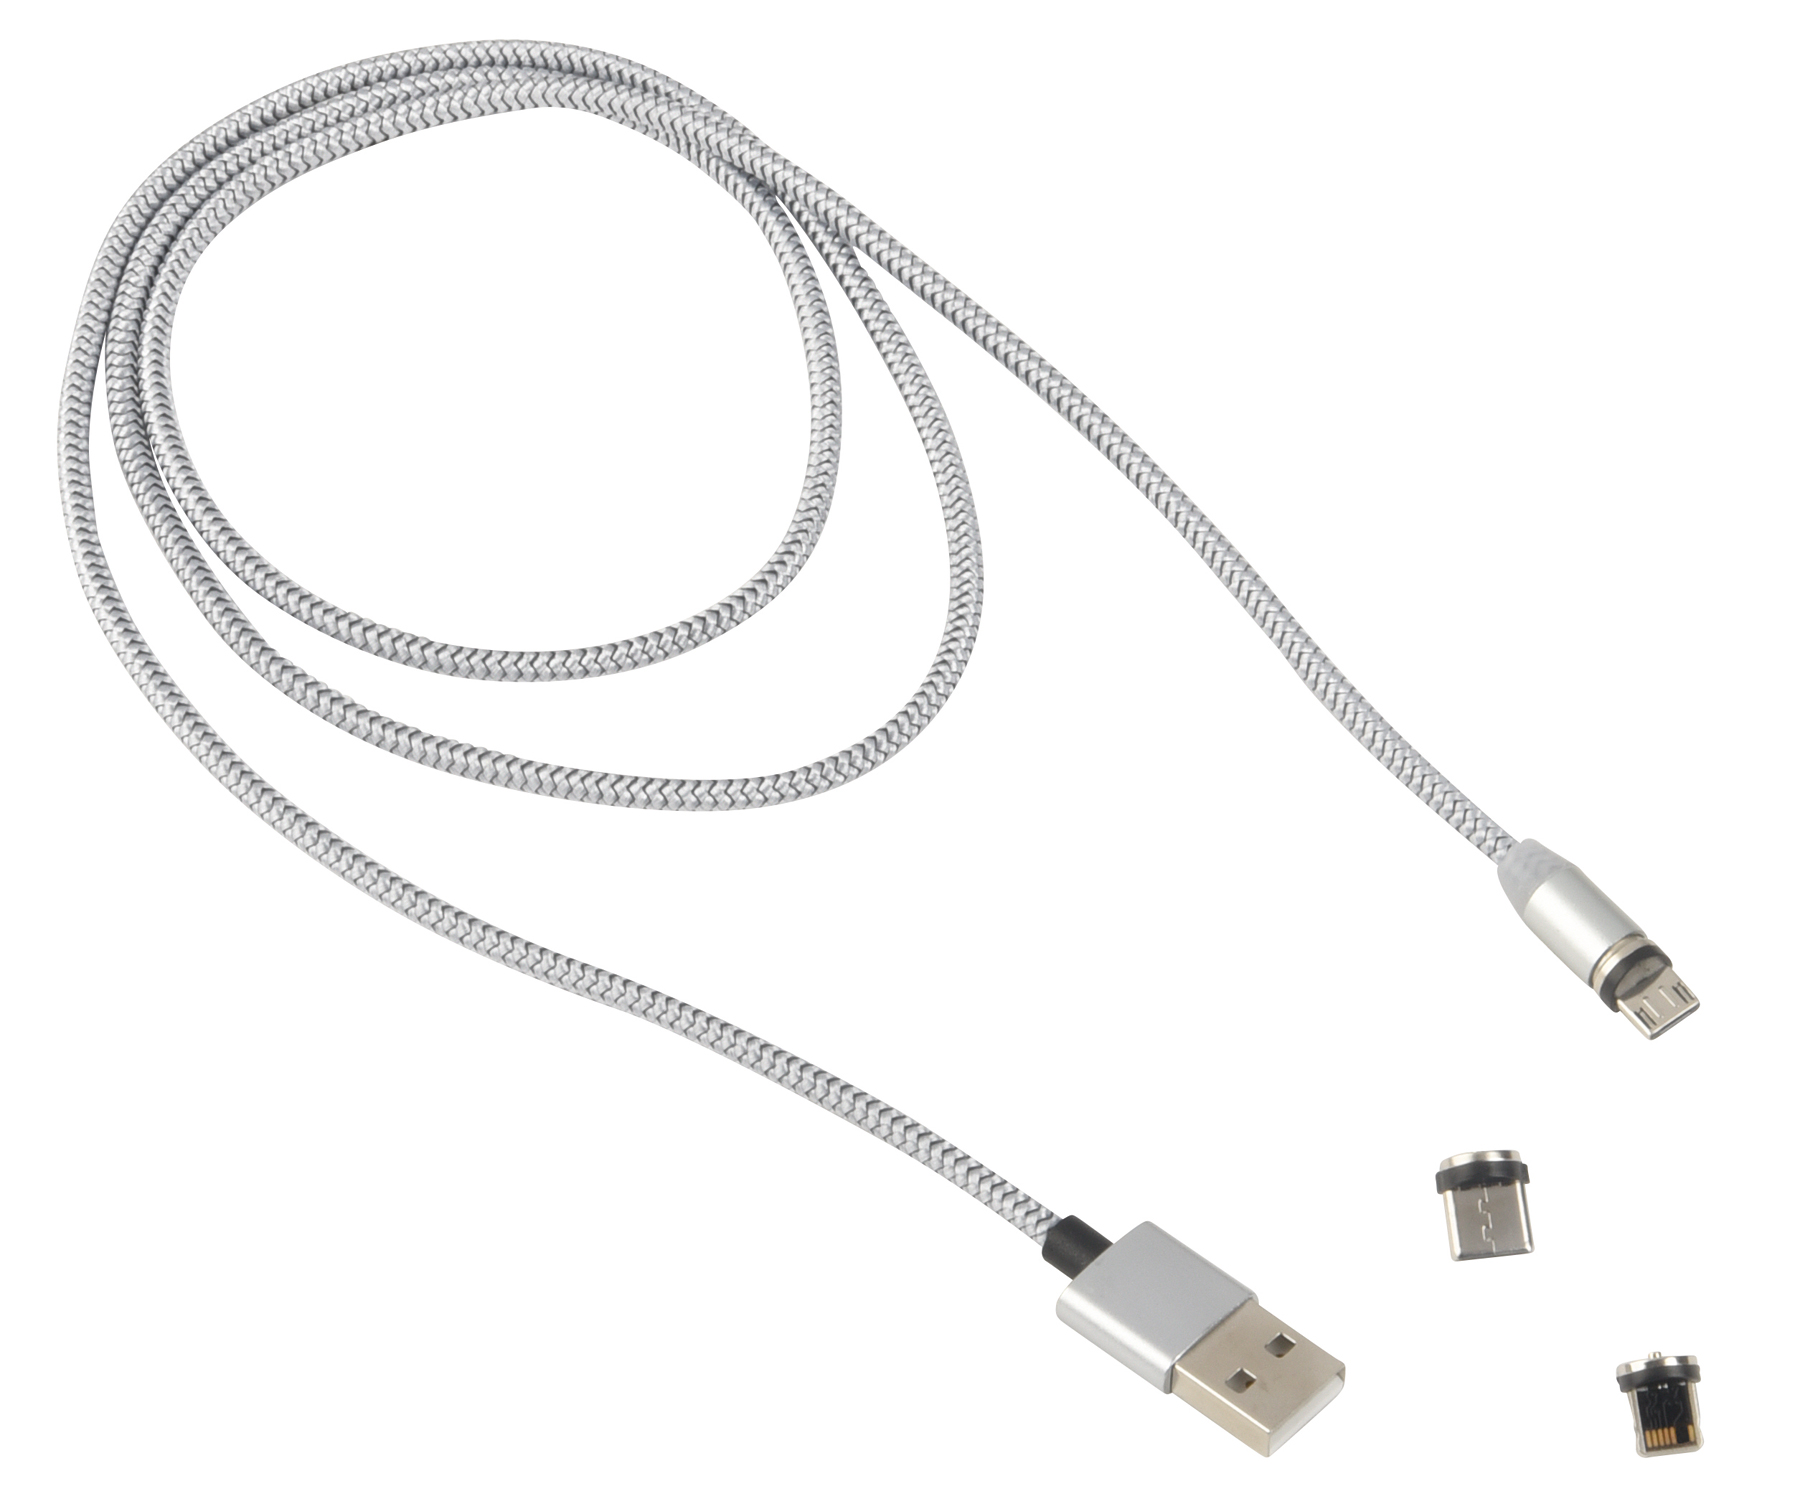 Nabíjecí kabel MAG POWER: pro nabíjení elektronických zařízení, vč. 3 adaptéry (USB Type-C, Micro-USB a Lightning), délka cca. 100 cm adaptér se zasune do zařízení, které je třeba nabít, a zůstane tam, přičemž spojení s kabelem se vytvoří magneticky  - stříbrná - foto